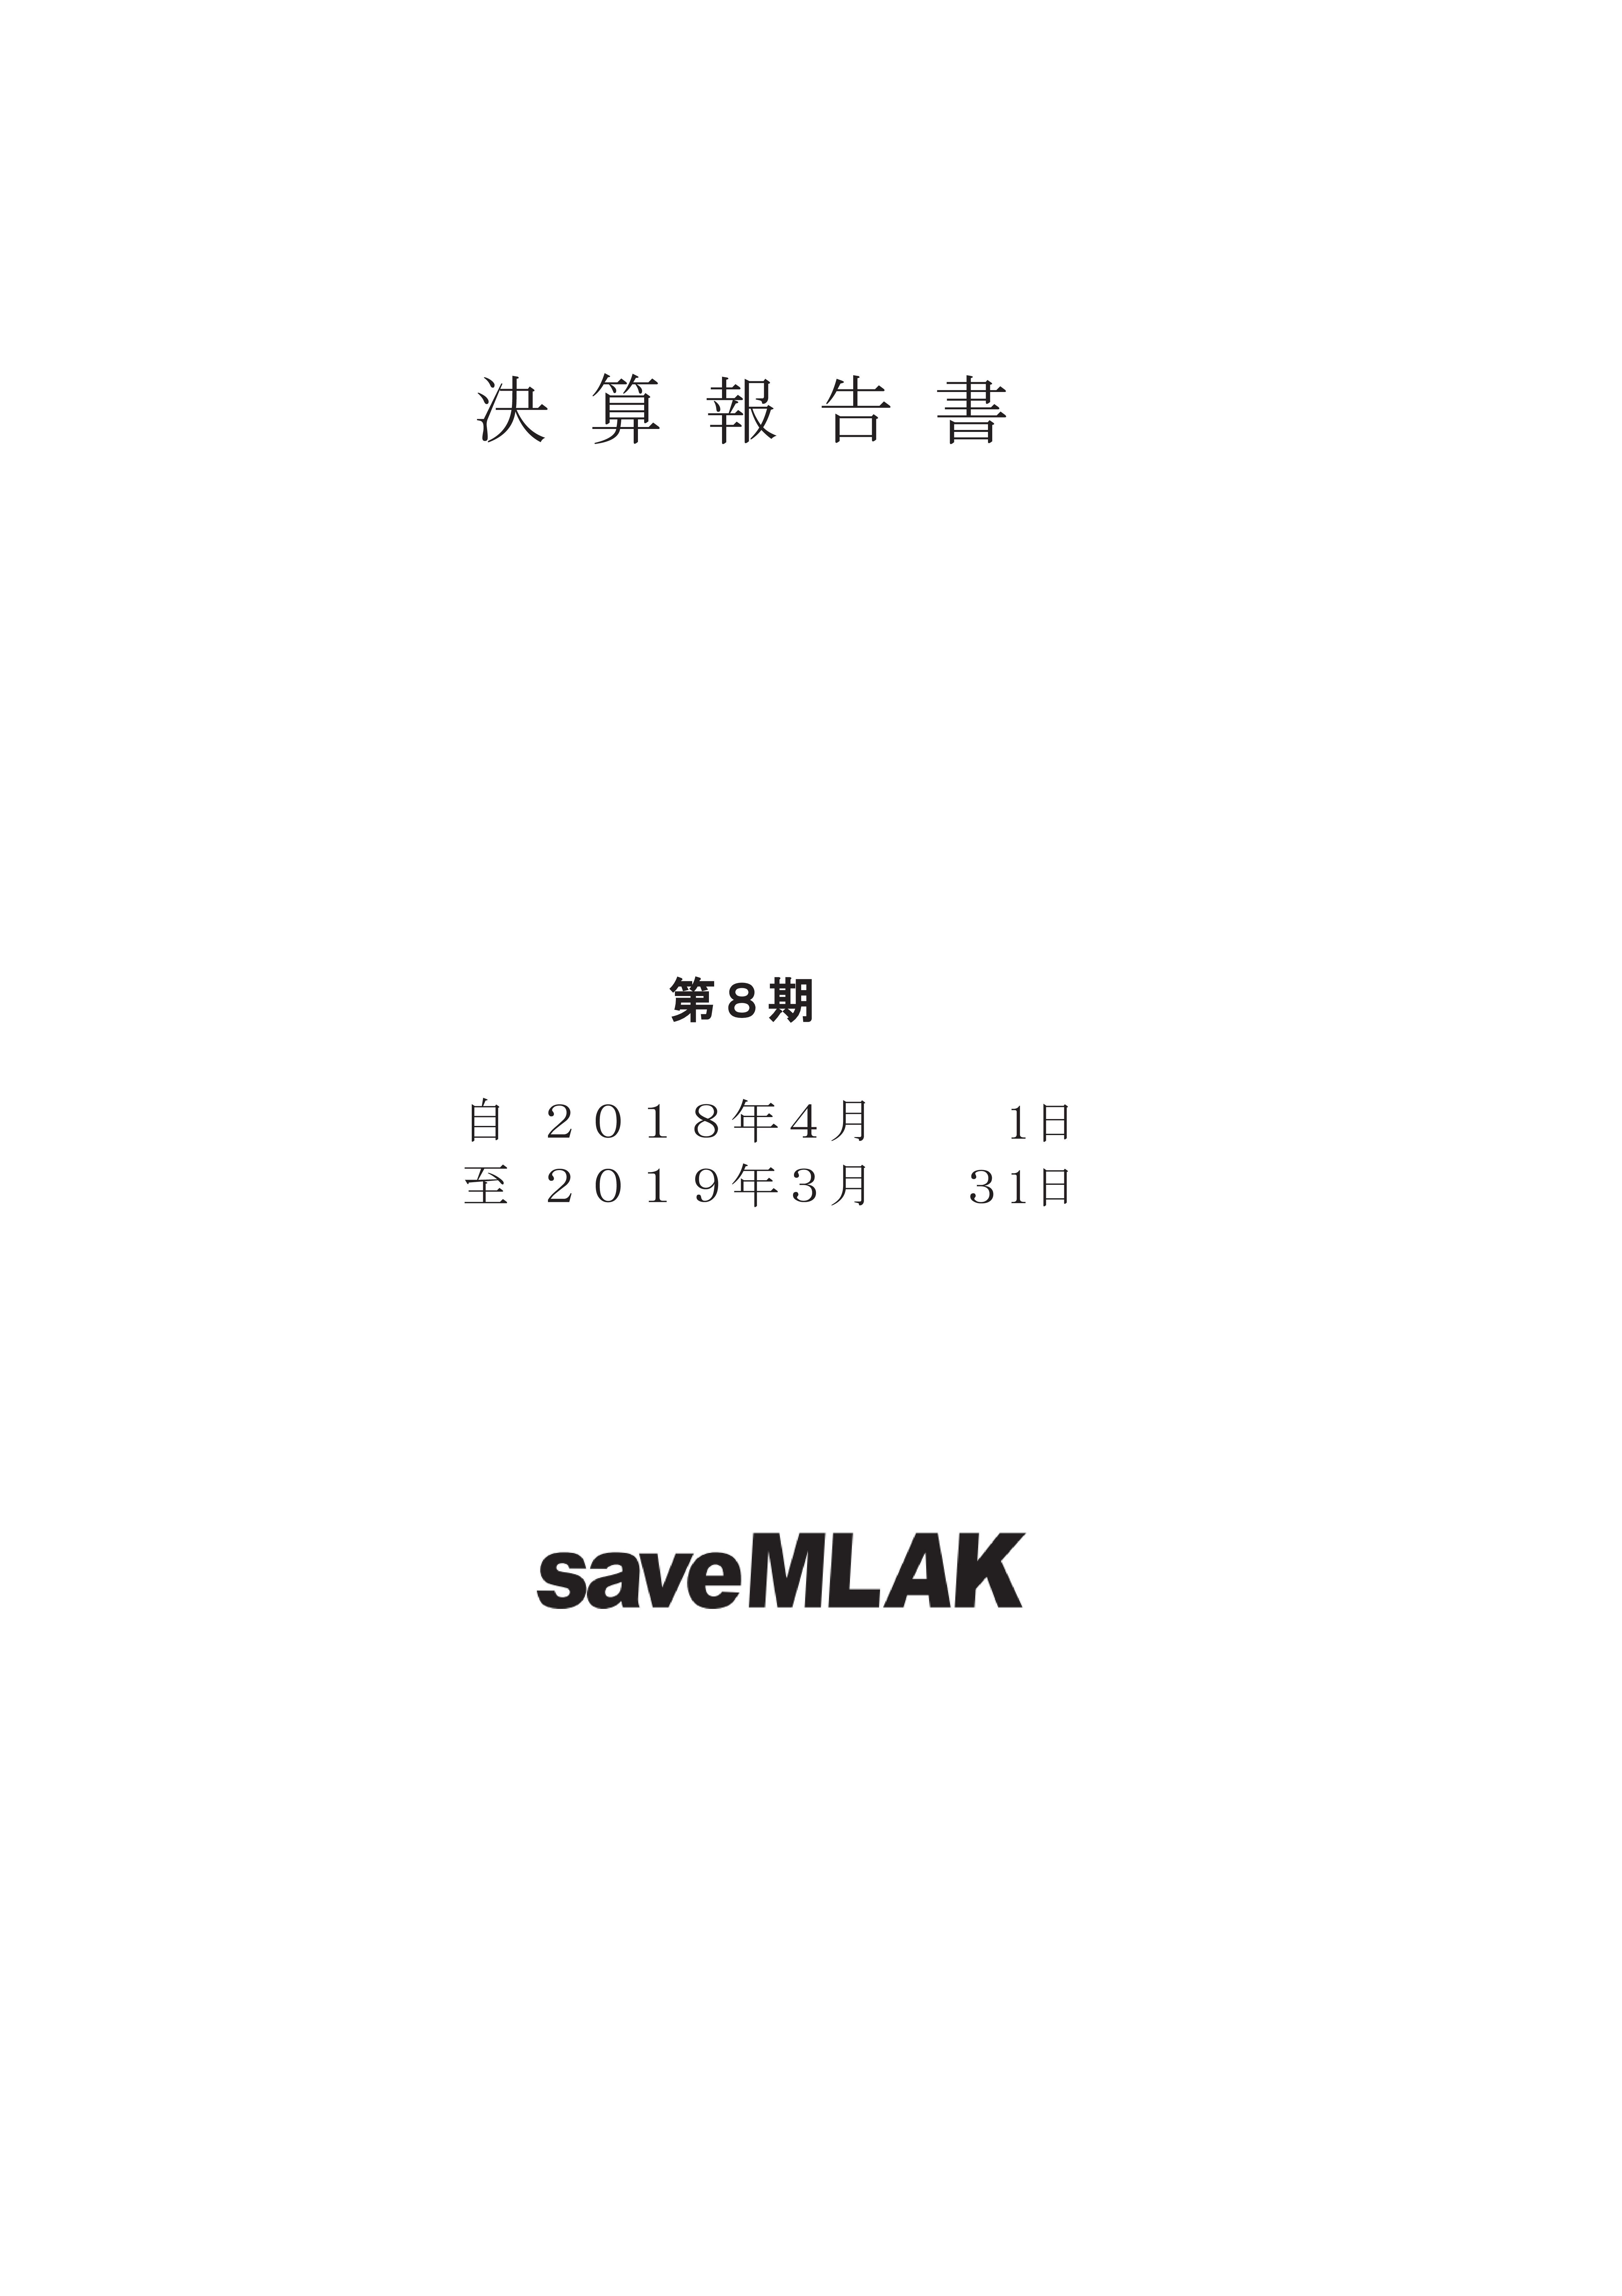 saveMLAK18年度決算報告書 表紙.jpg